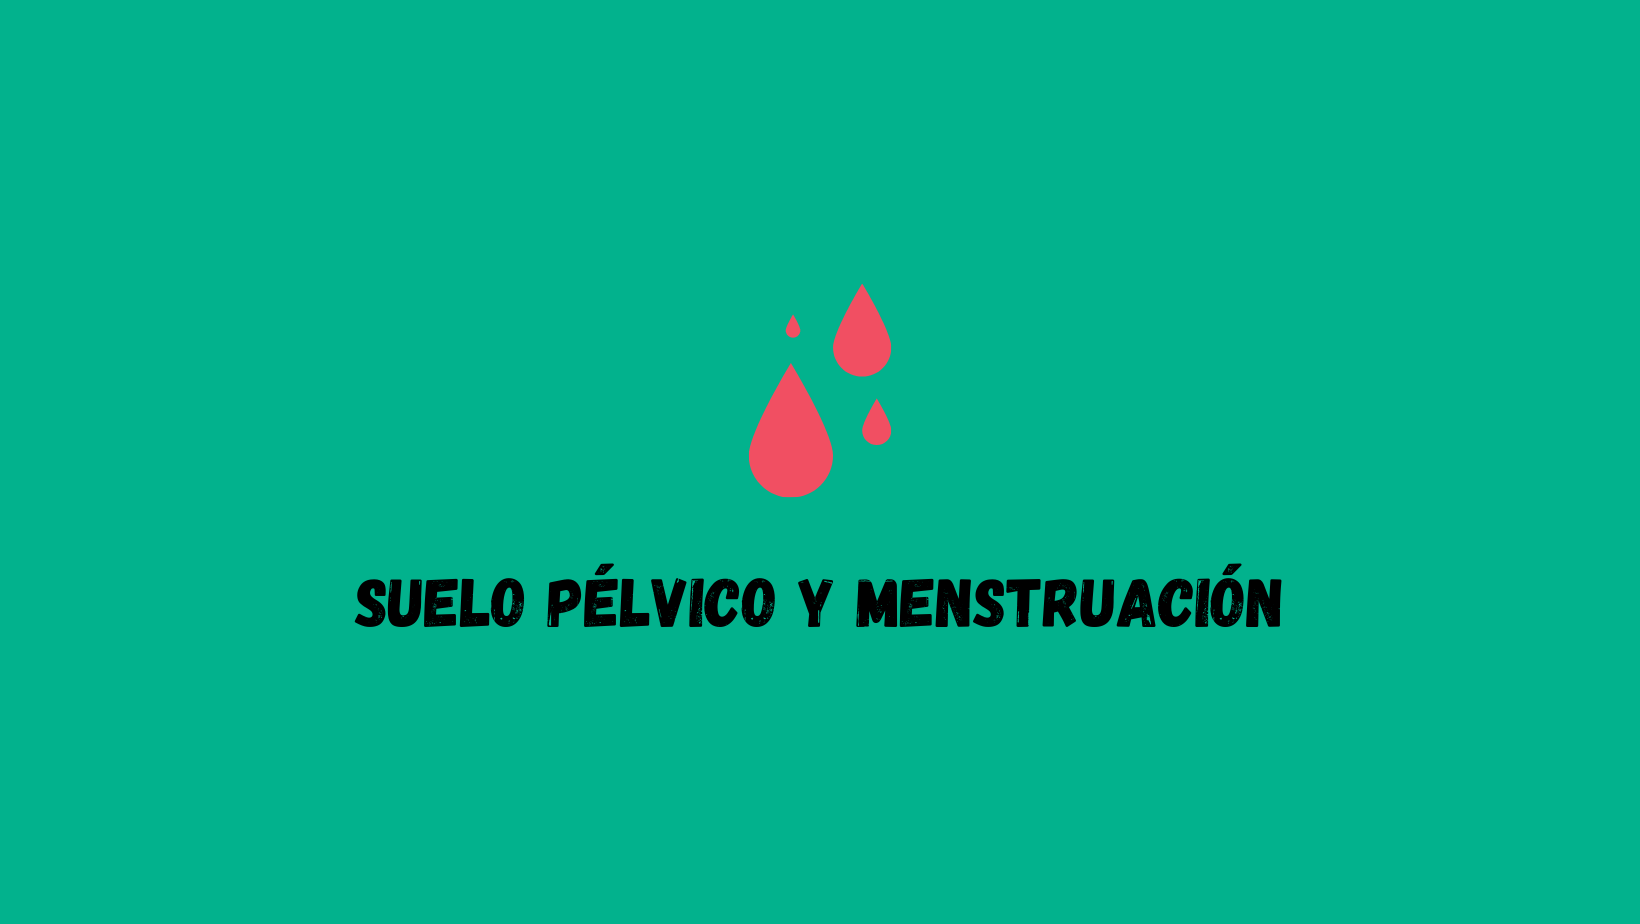 Suelo pélvico y menstruación